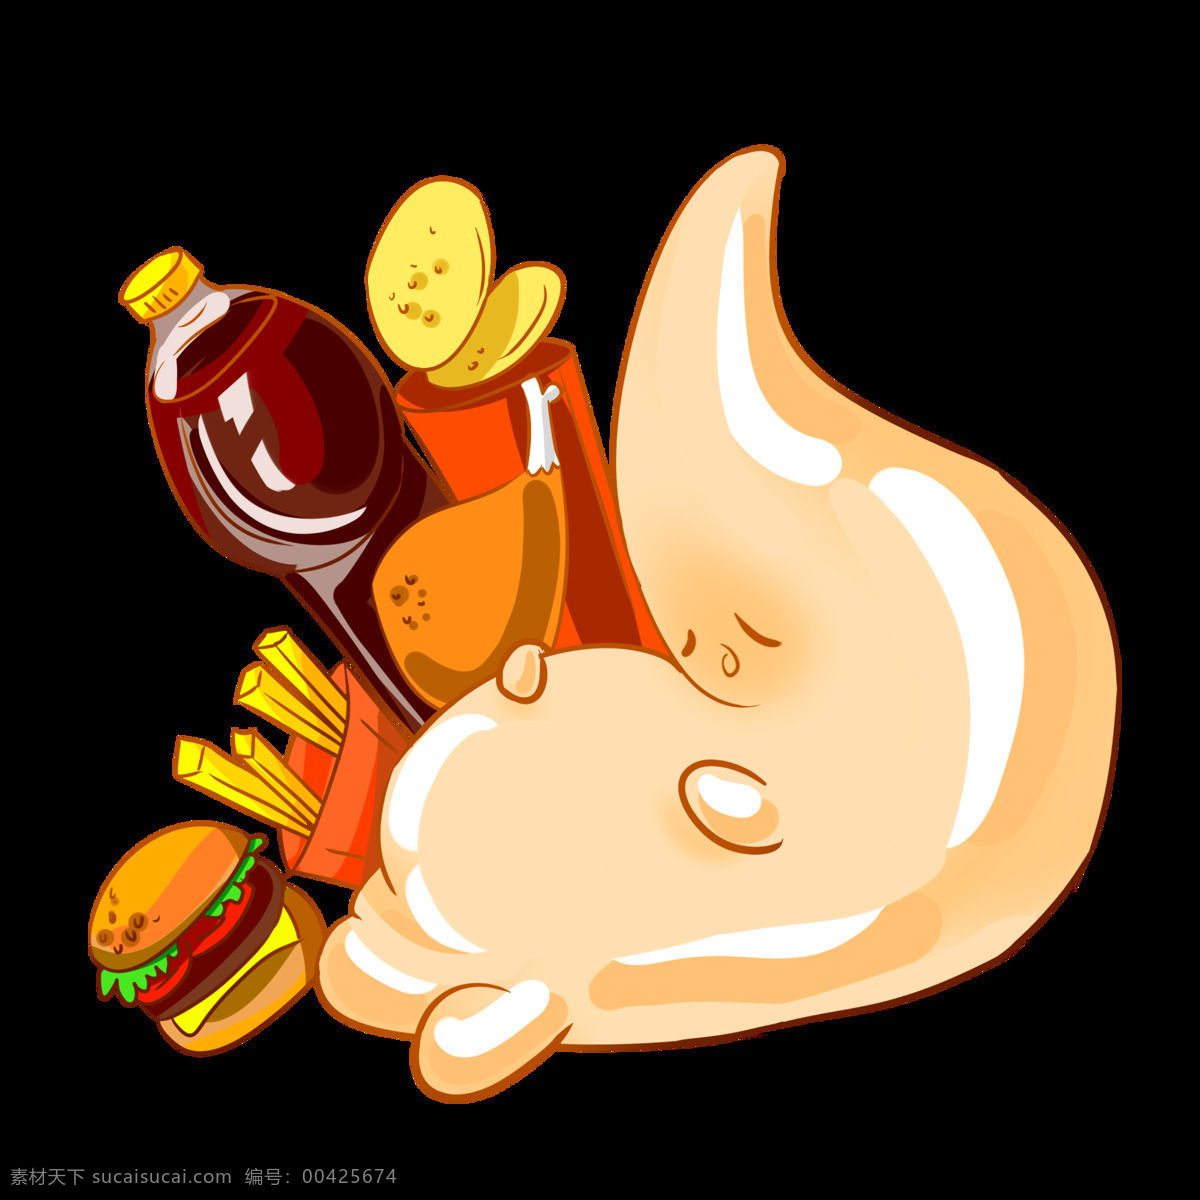 吃 饱 人体 器官 胃 消化 人体器官 胃消化 胃部动画 高清图片 胃部动画图 动漫动画